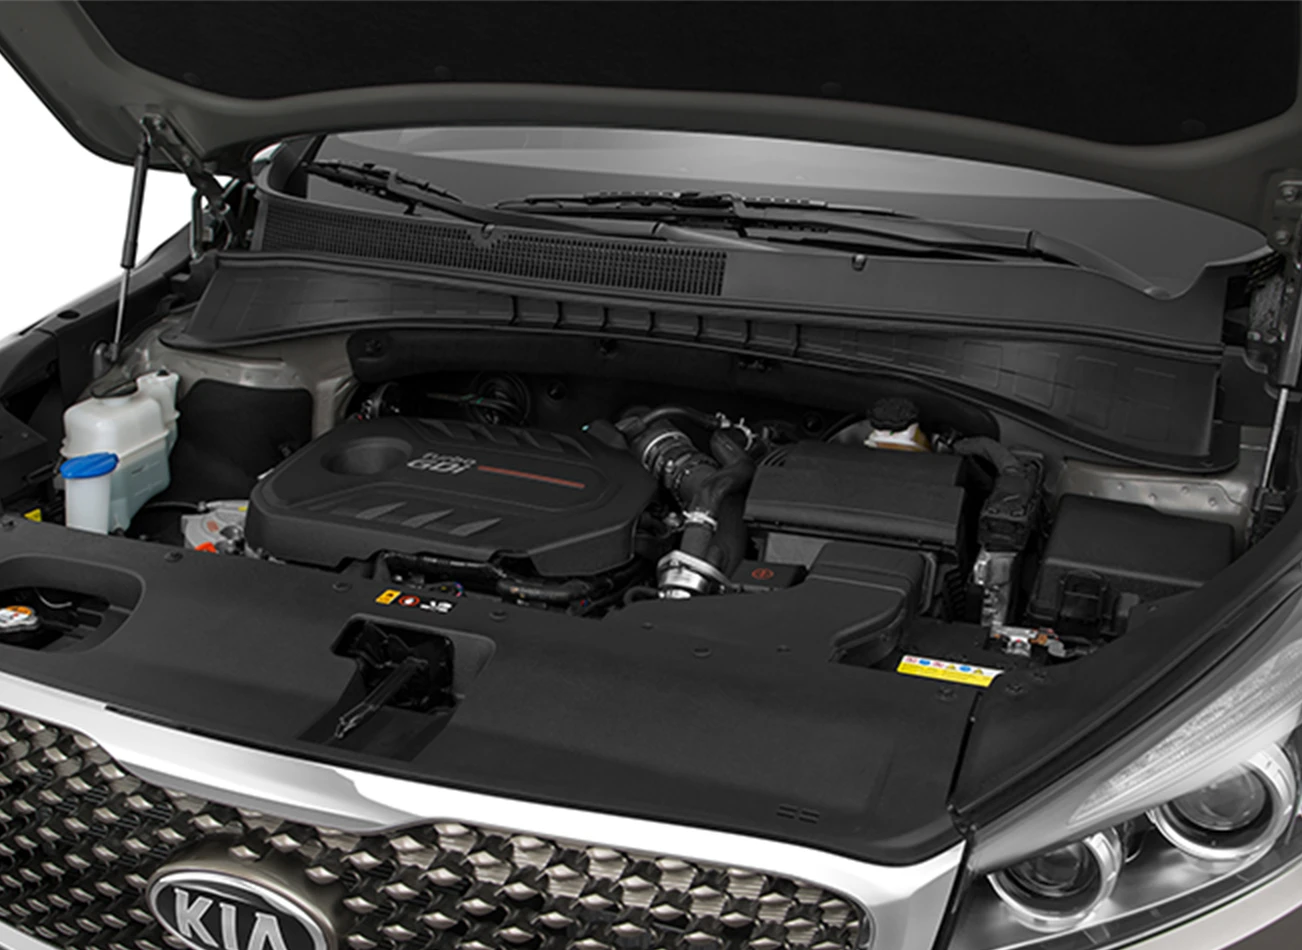 2016 Kia Sorento Review: Engine | CarMax